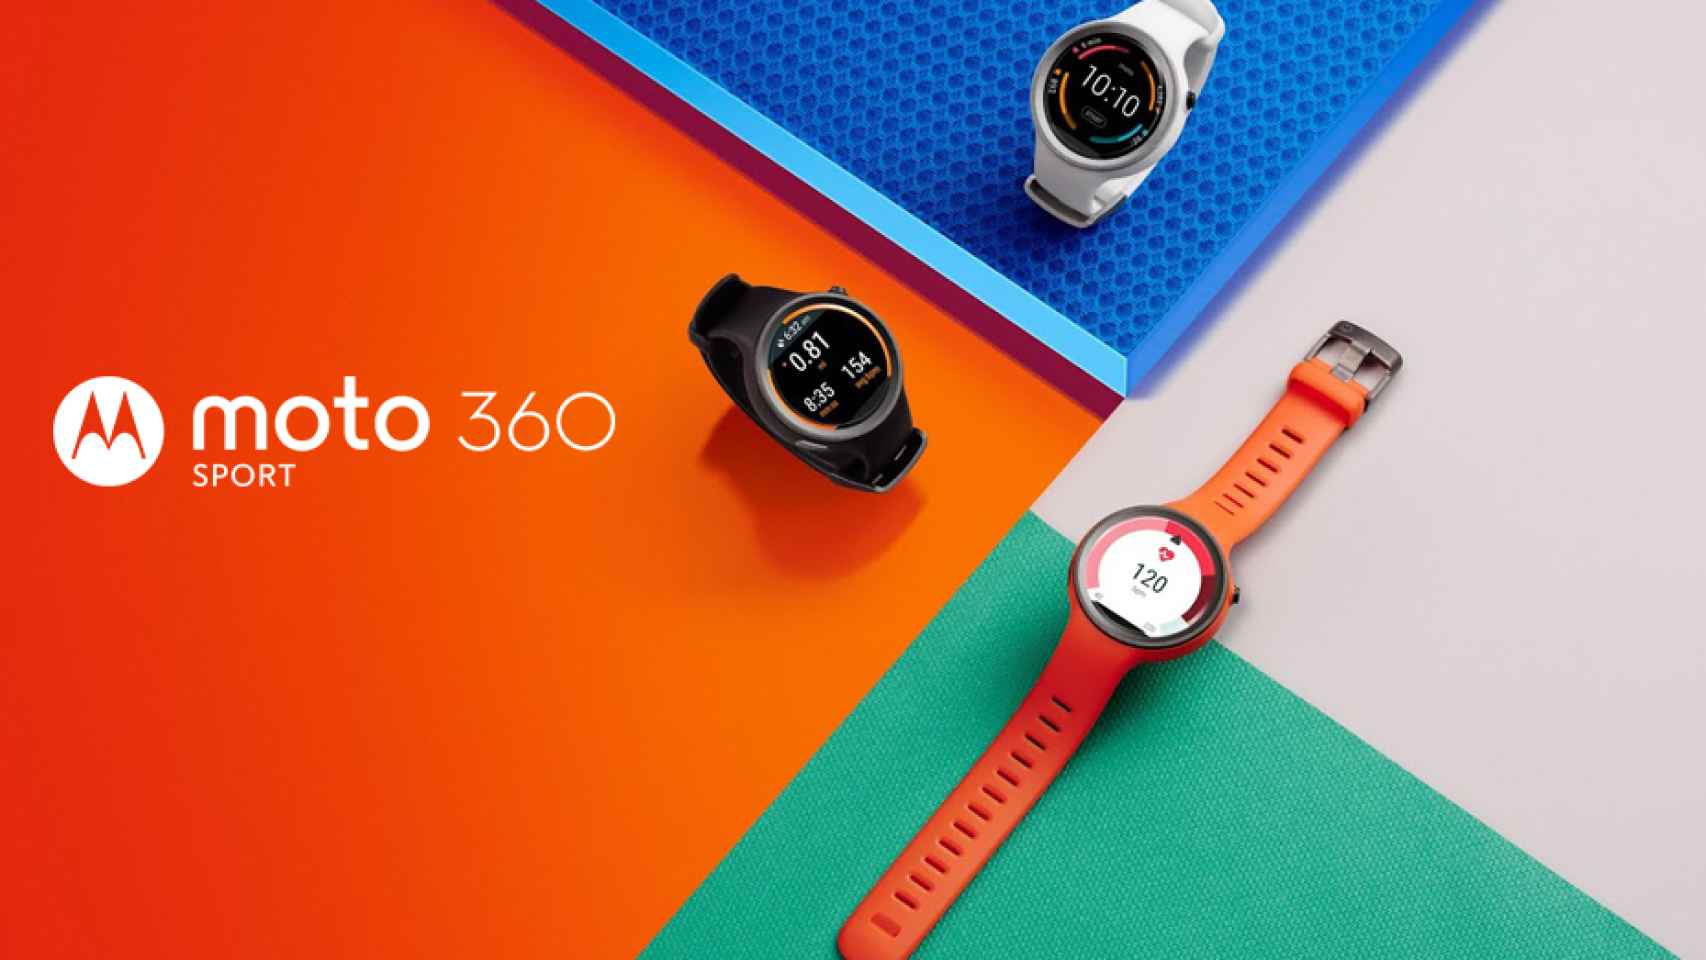 Nuevo Motorola Moto 360 Sport, con GPS y pensado para deportistas